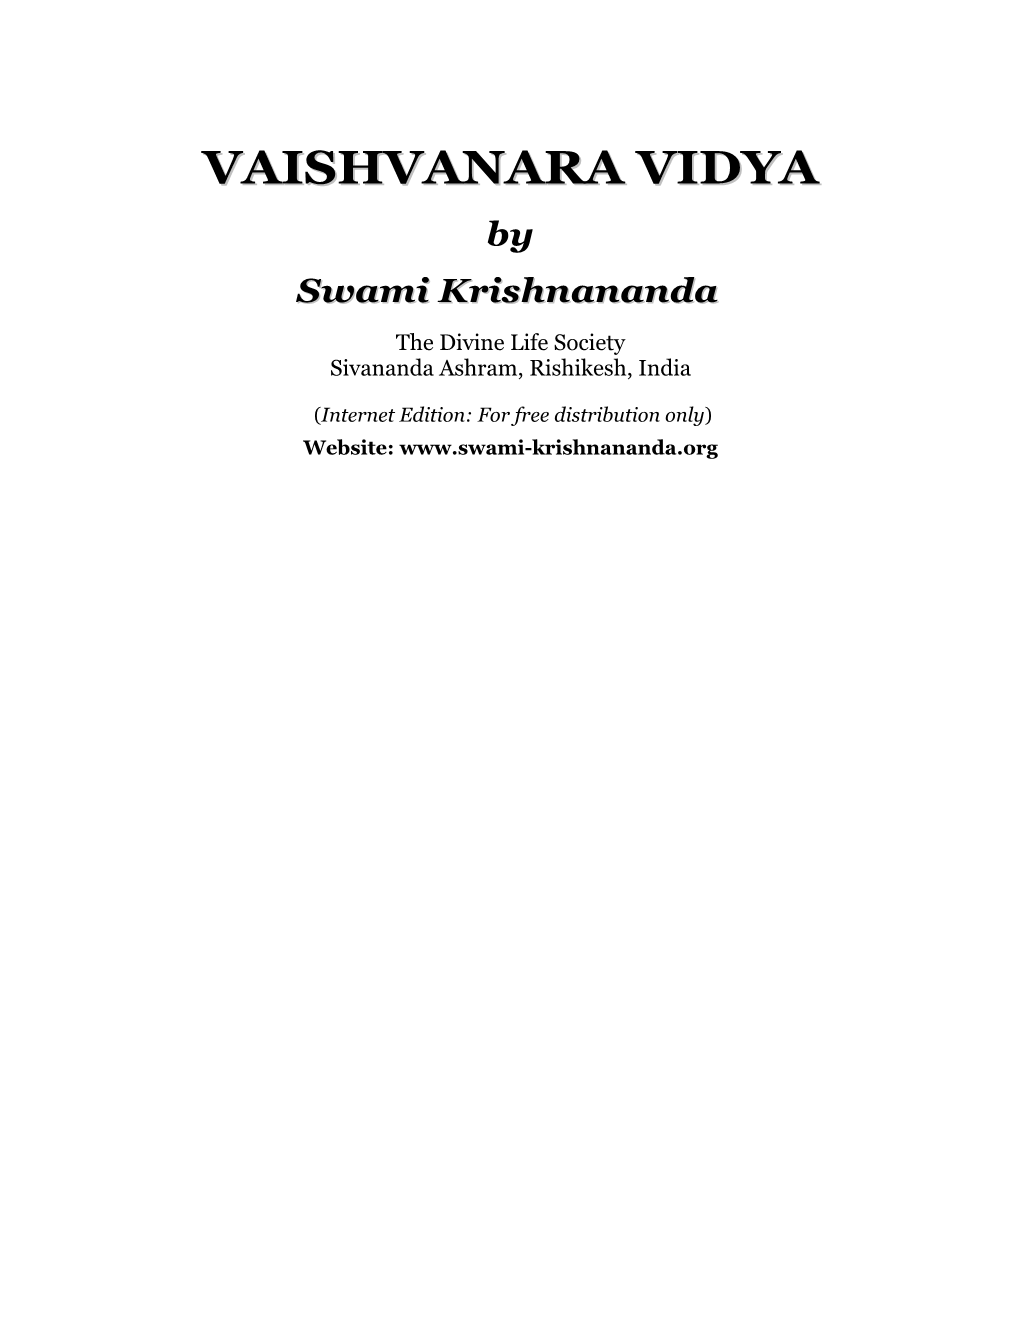 Vaishvanara Vidya.Pdf